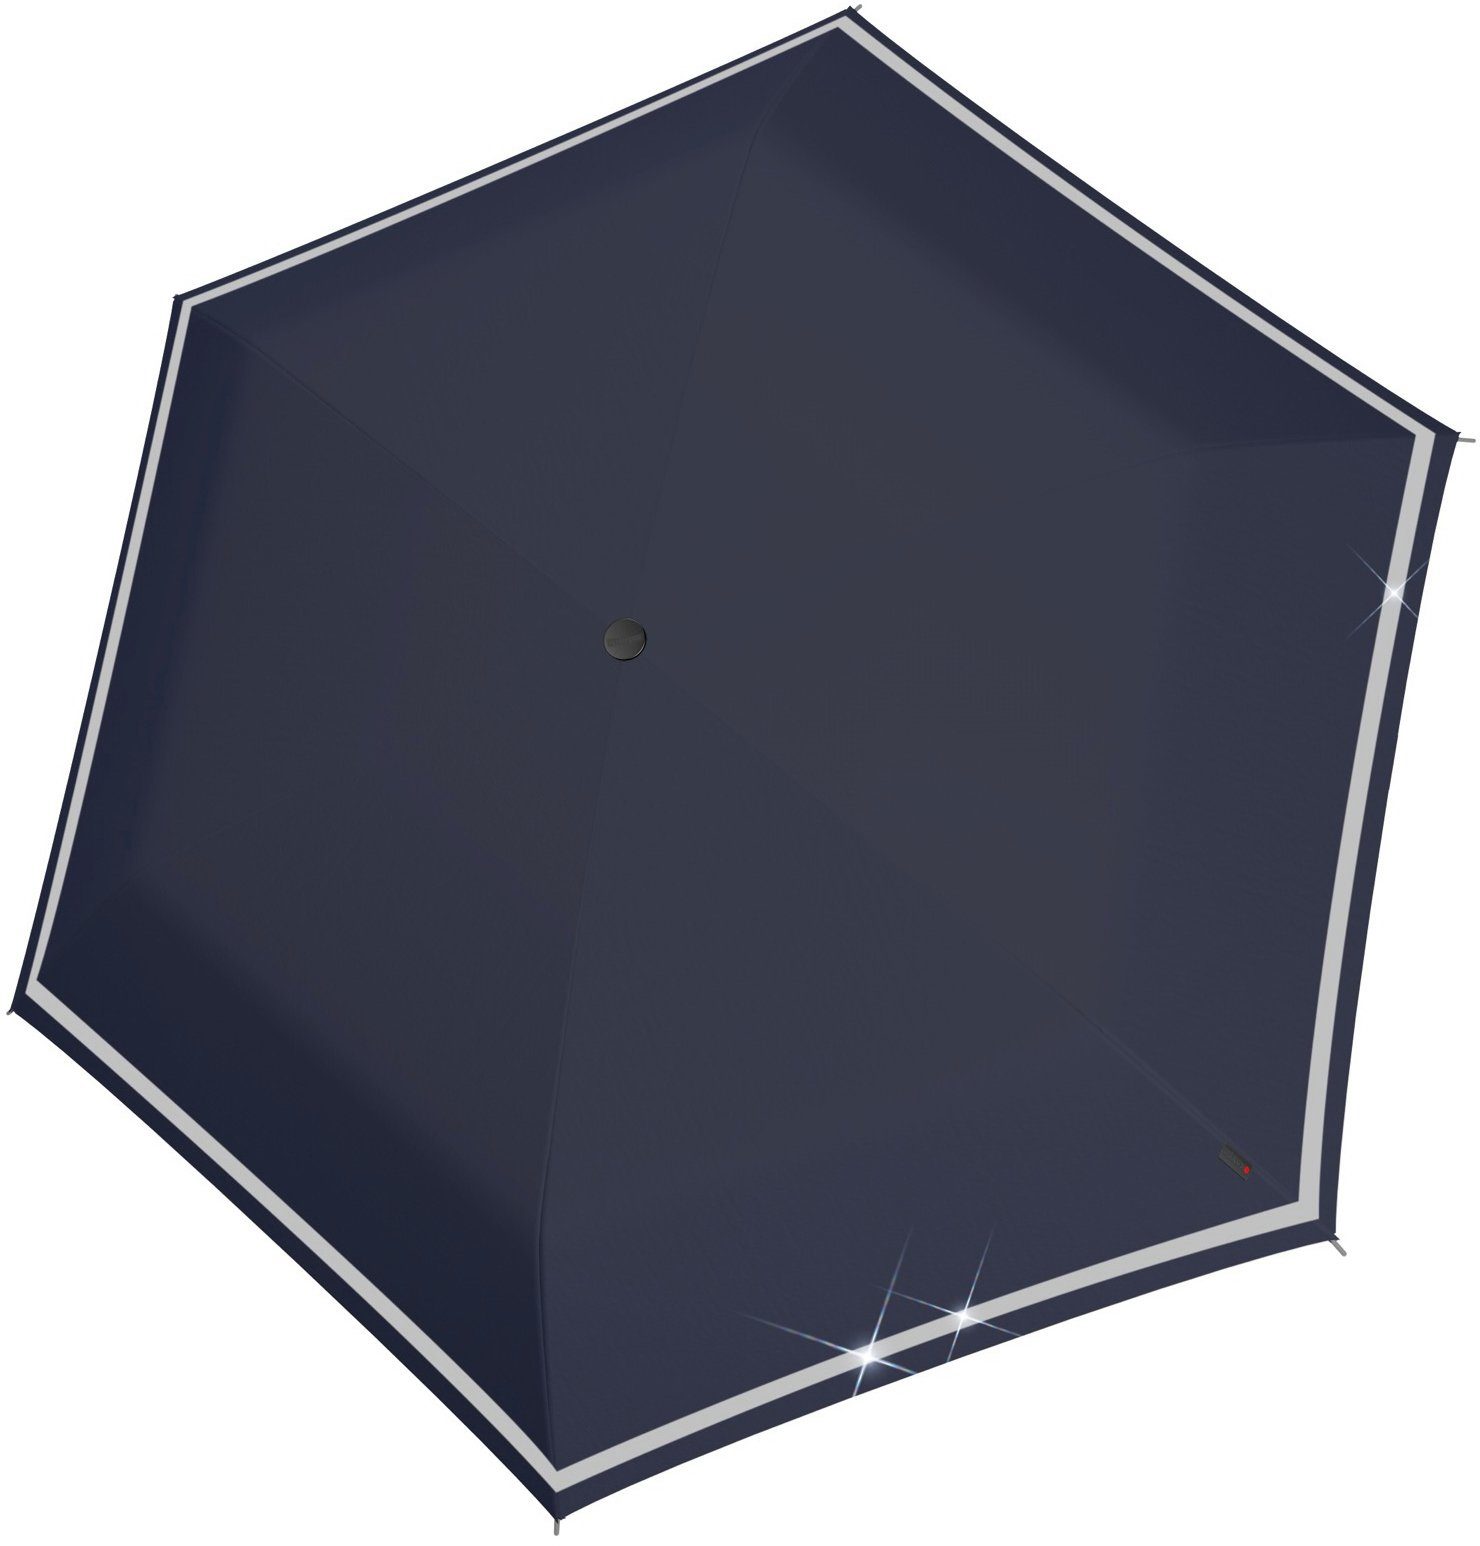 Knirps® Taschenregenschirm Rookie manual, navy reflective, für Kinder; mit umlaufendem, reflektierendem Band